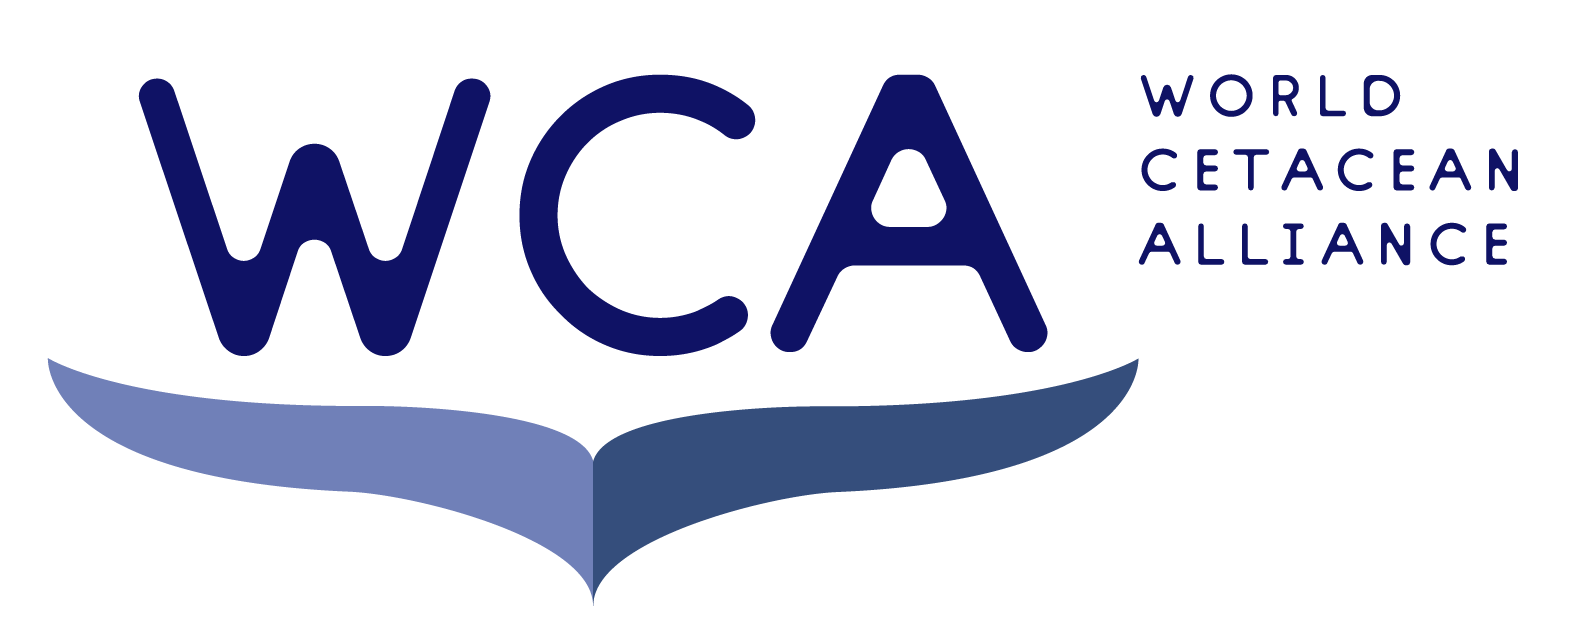 WCA Logo - World Cetacean Alliance |